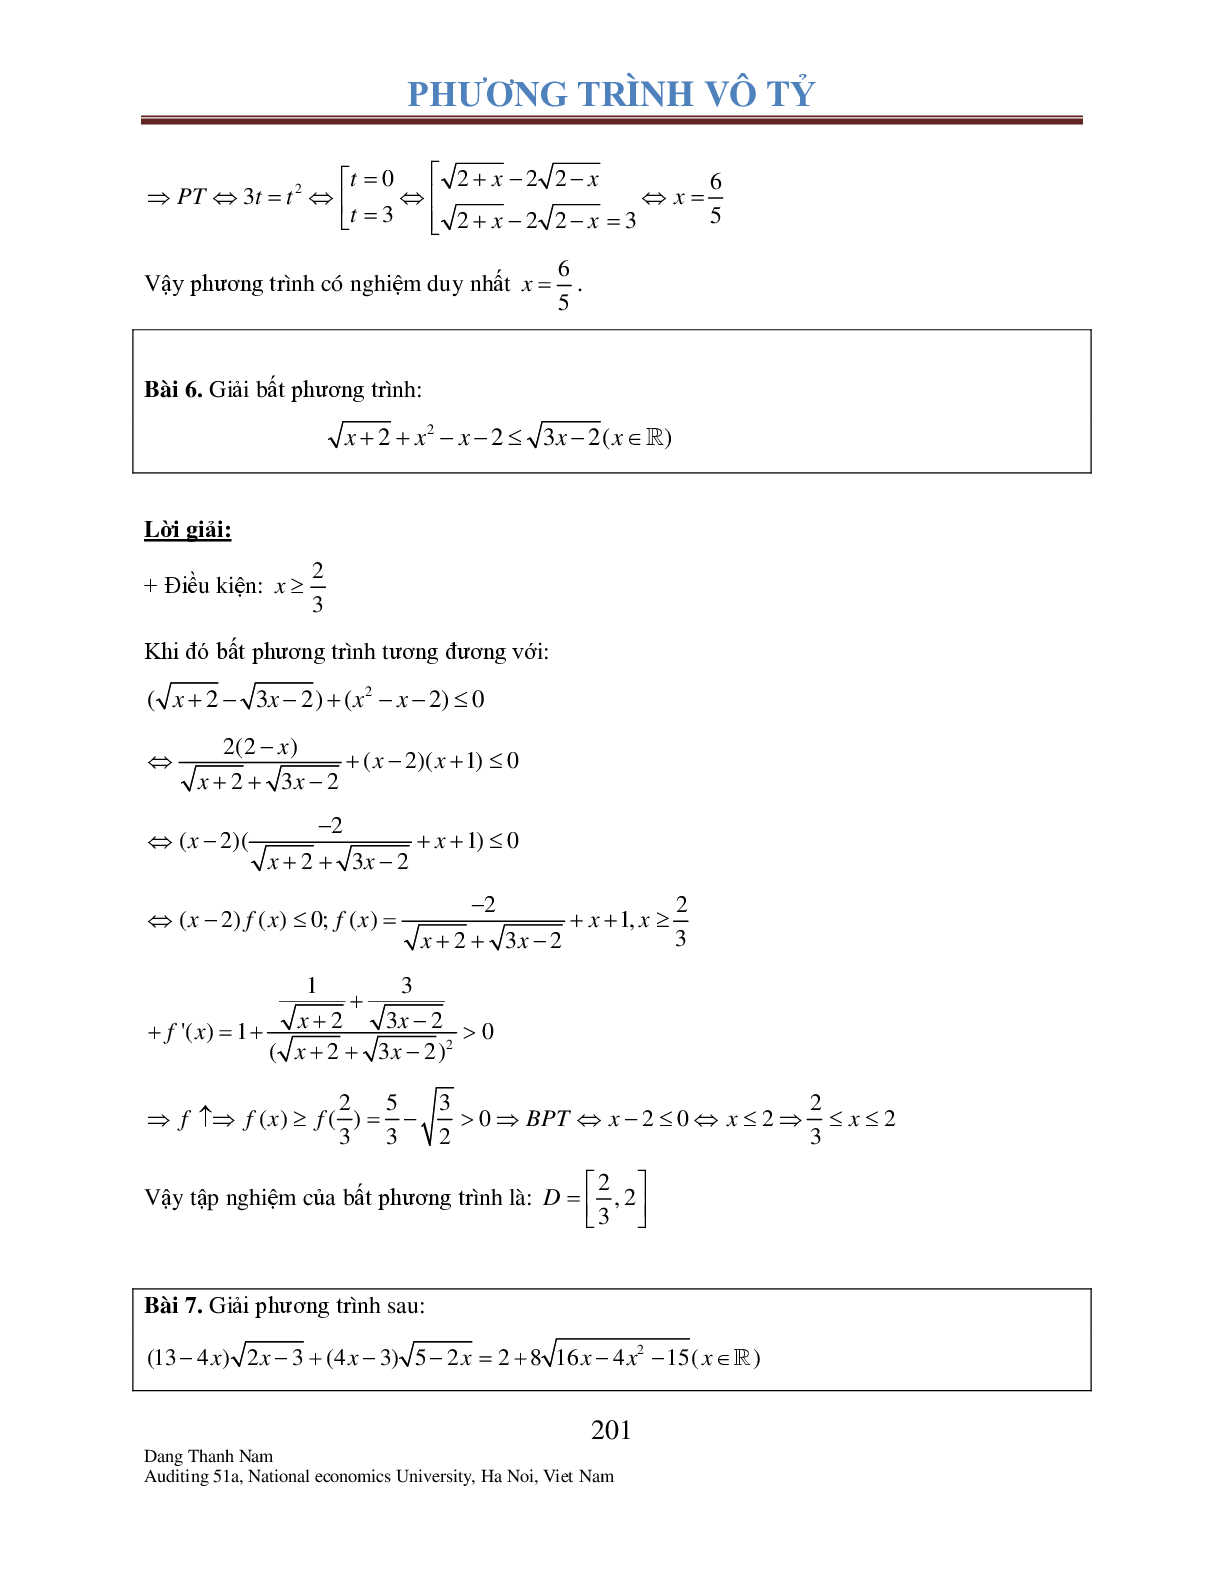 Chuyên đề phương trình Vô tỉ (trang 6)